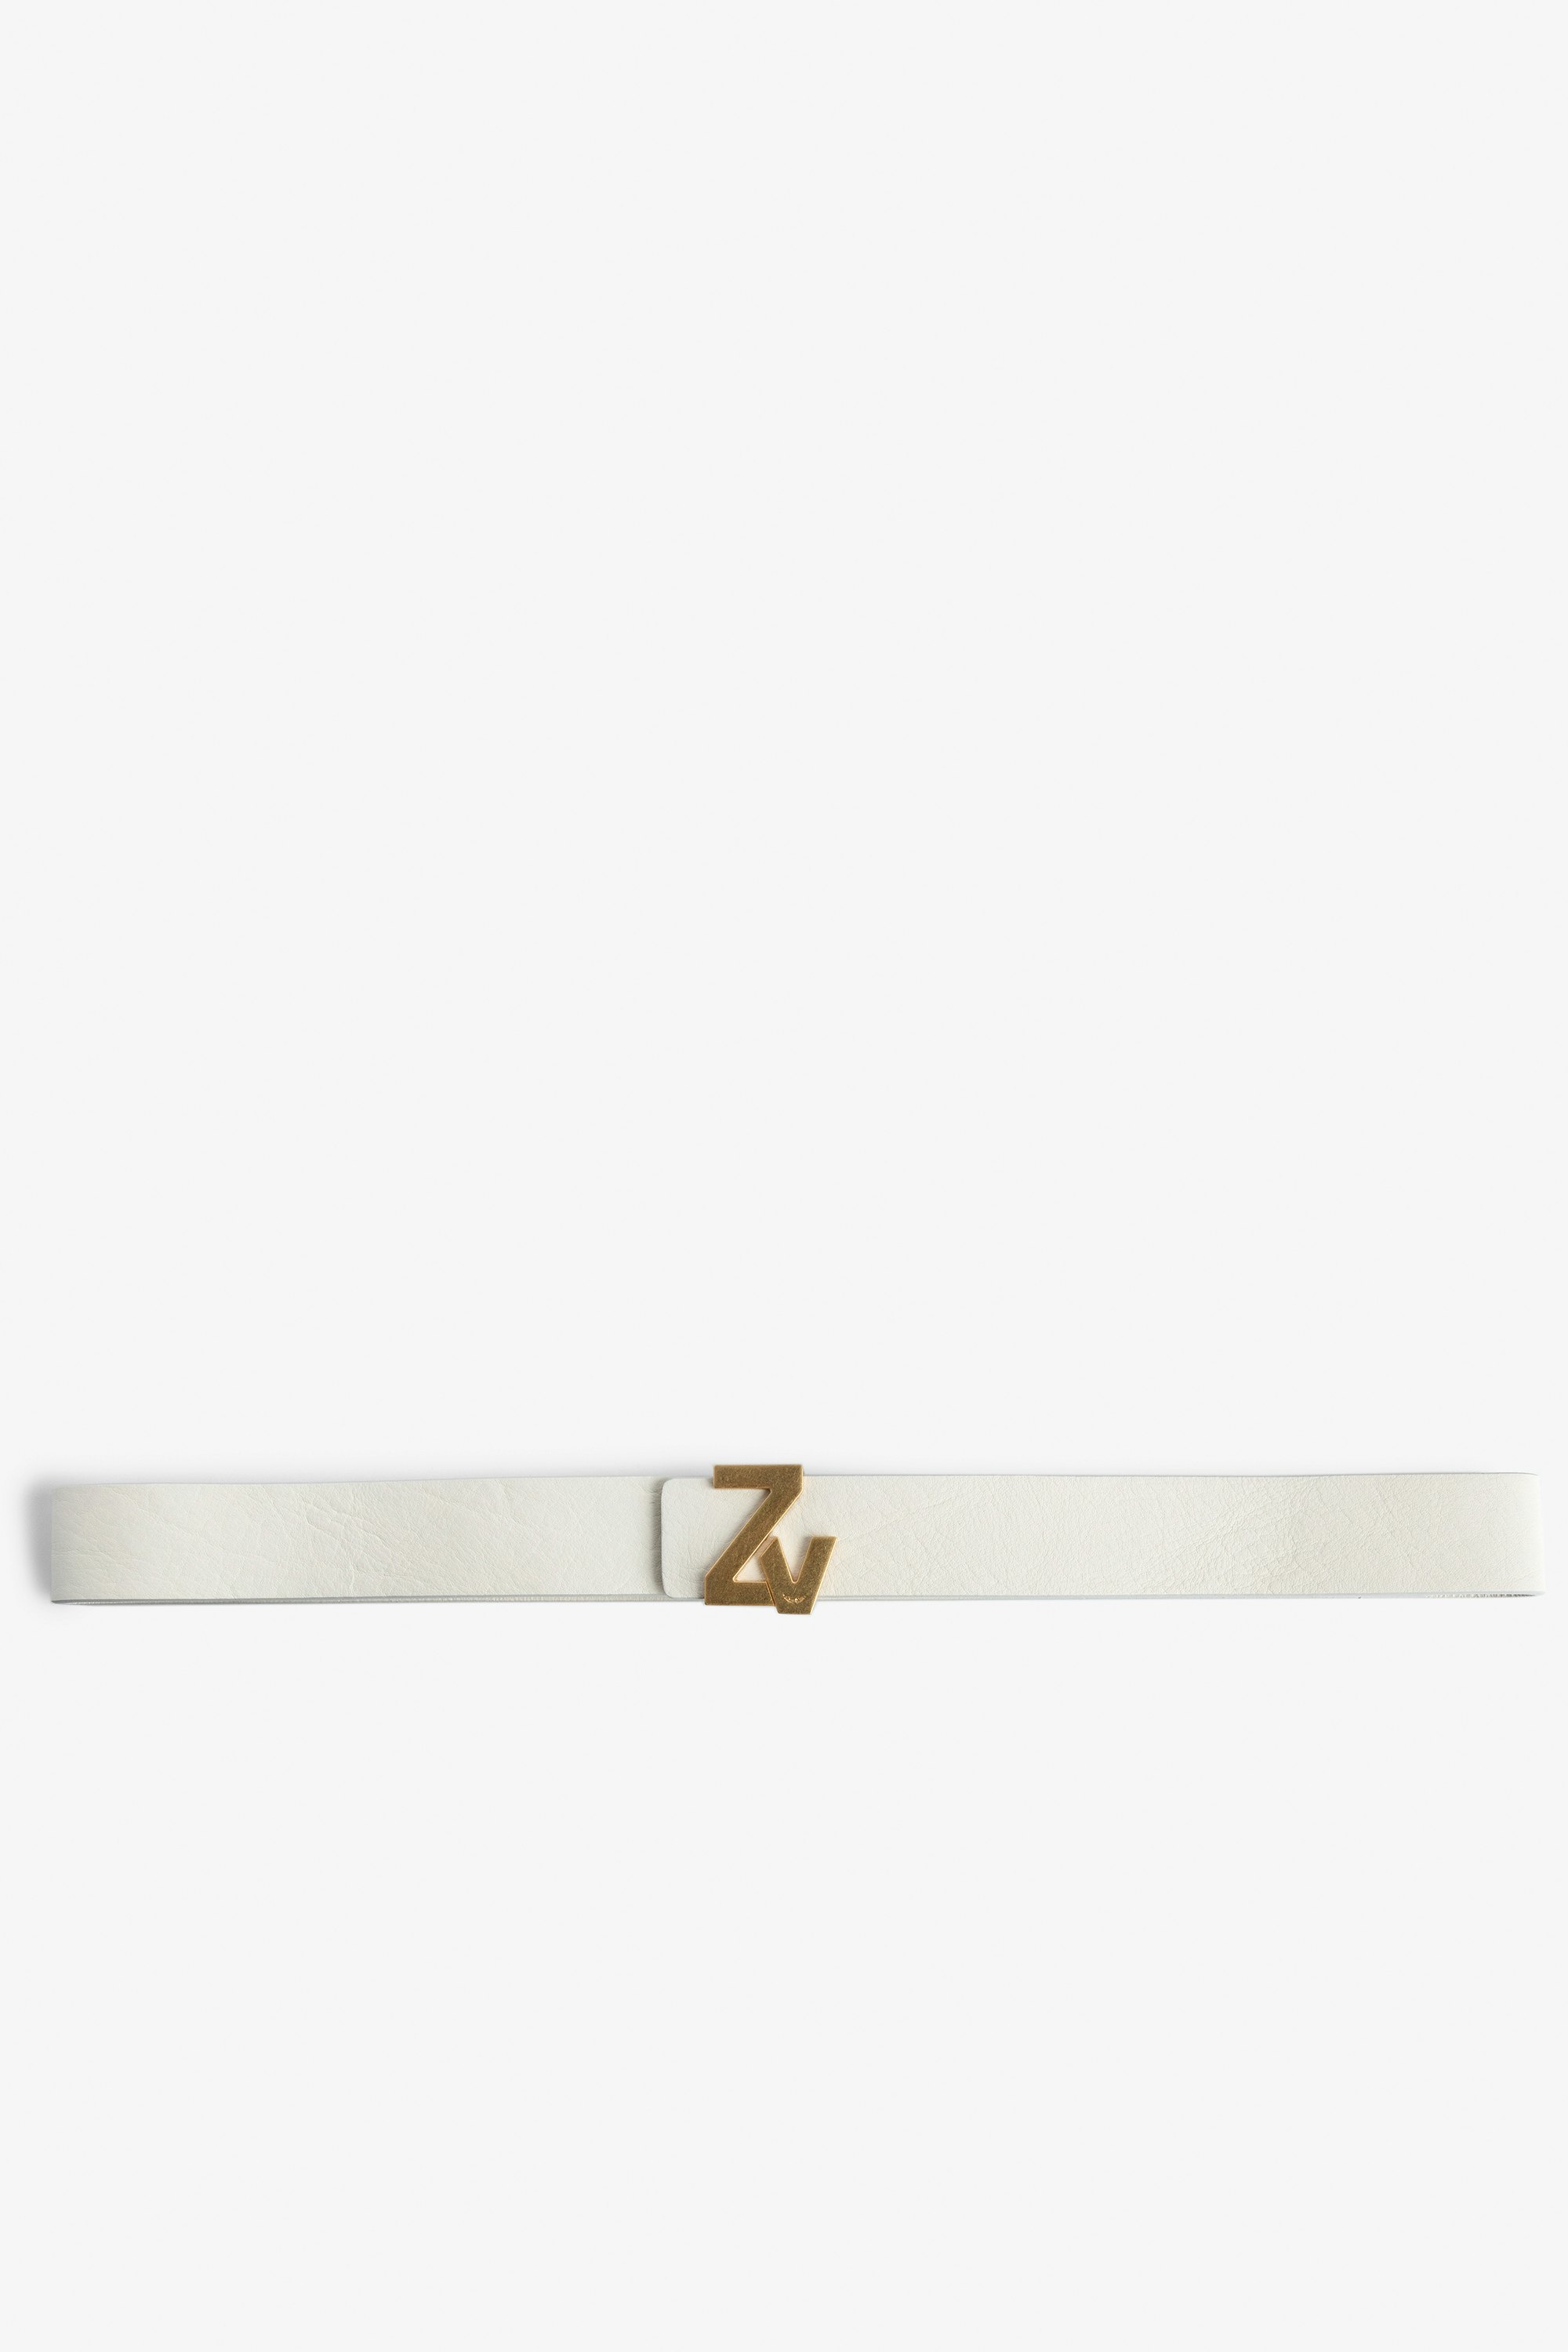 ZV Initiale La Belt - Women's belt in ecru leather with gold-tone ZV buckle.